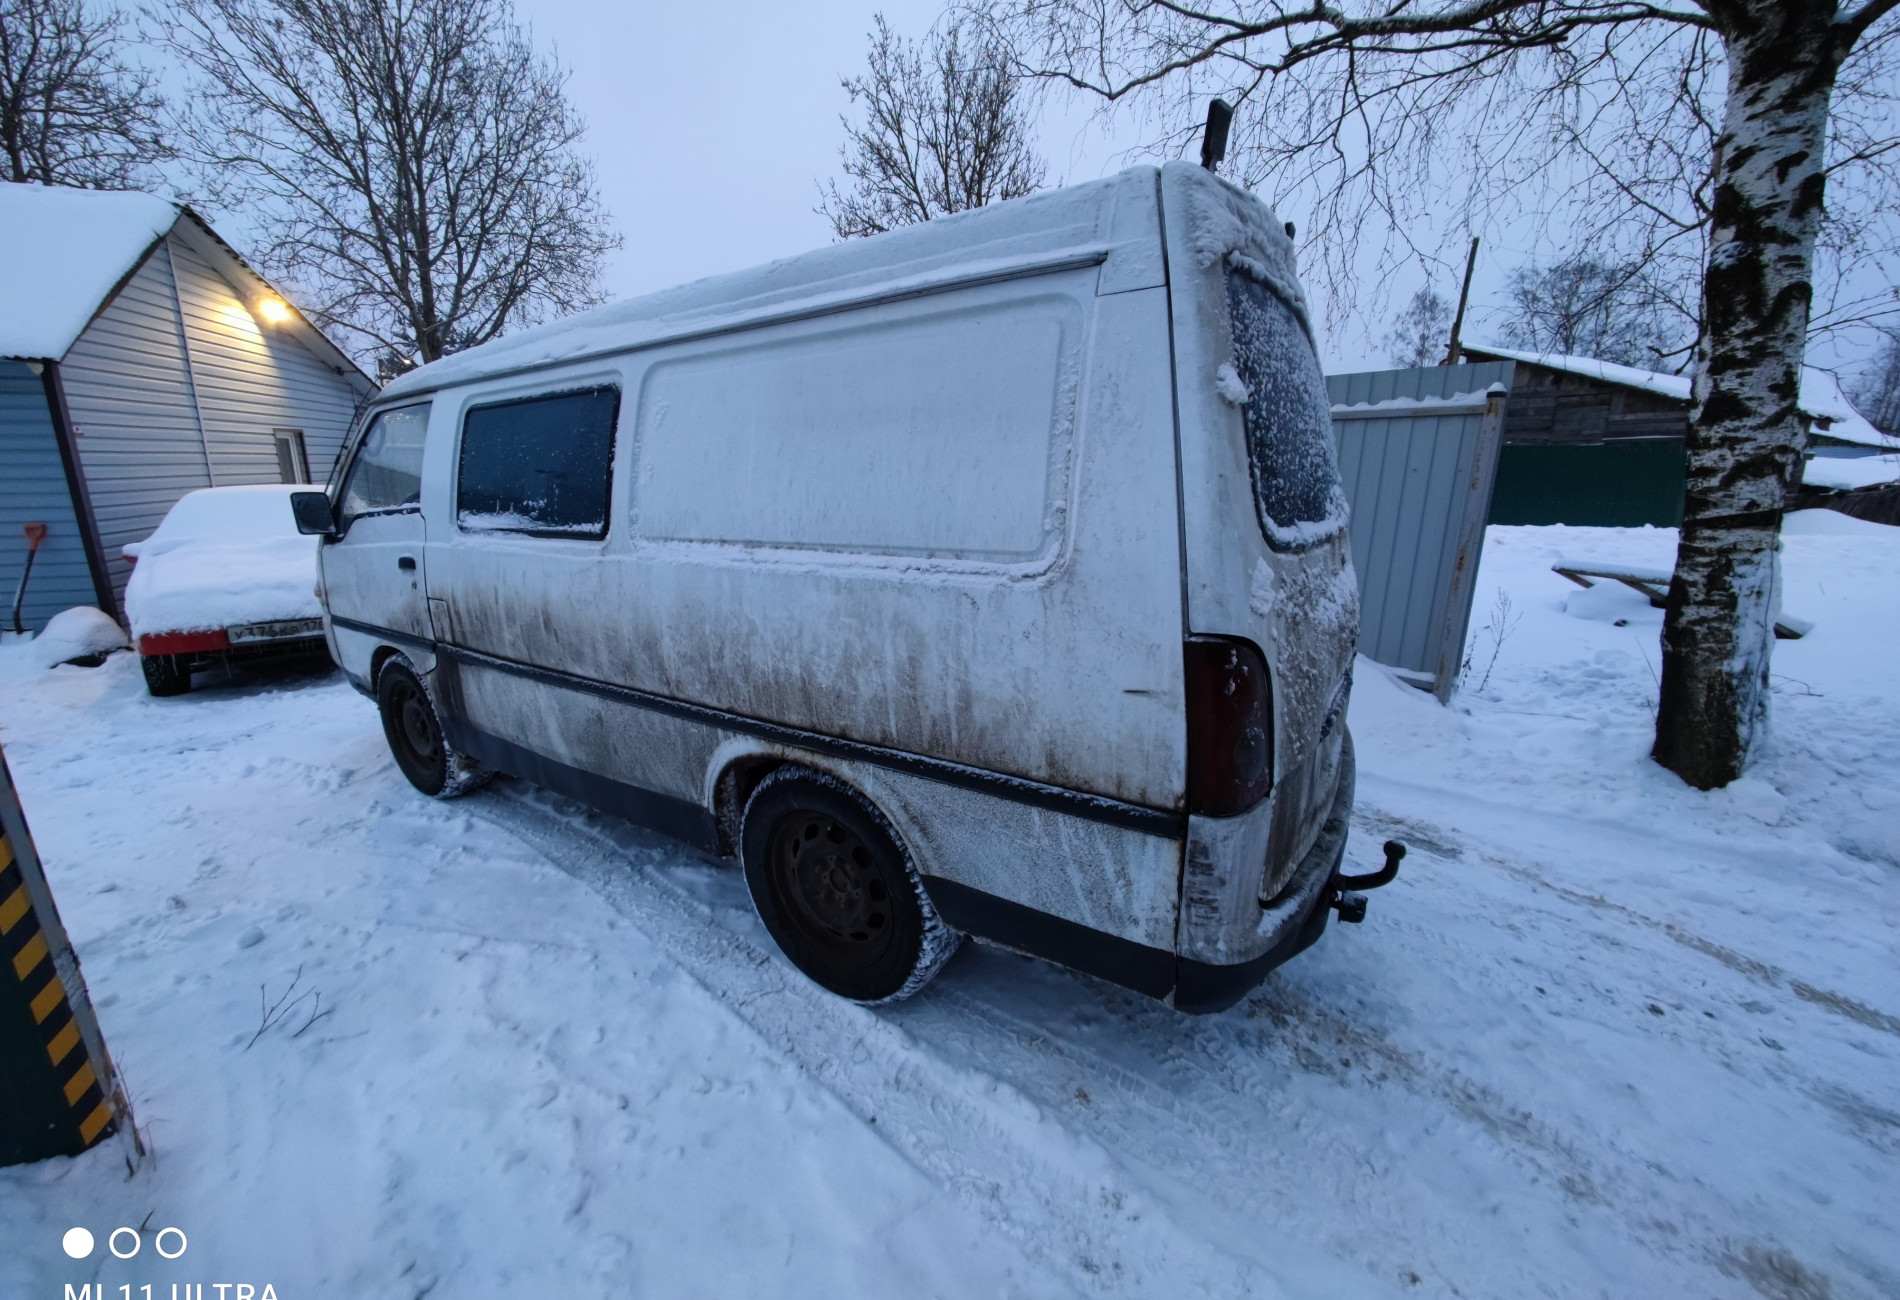 Аренда hyundai h1 эконом класса 2000 года в городе Москва Проспект Ветеранов от 1680 руб./сутки, задний привод, двигатель: дизель, объем 2.5 литров, без водителя, недорого, вид 2 - RentRide